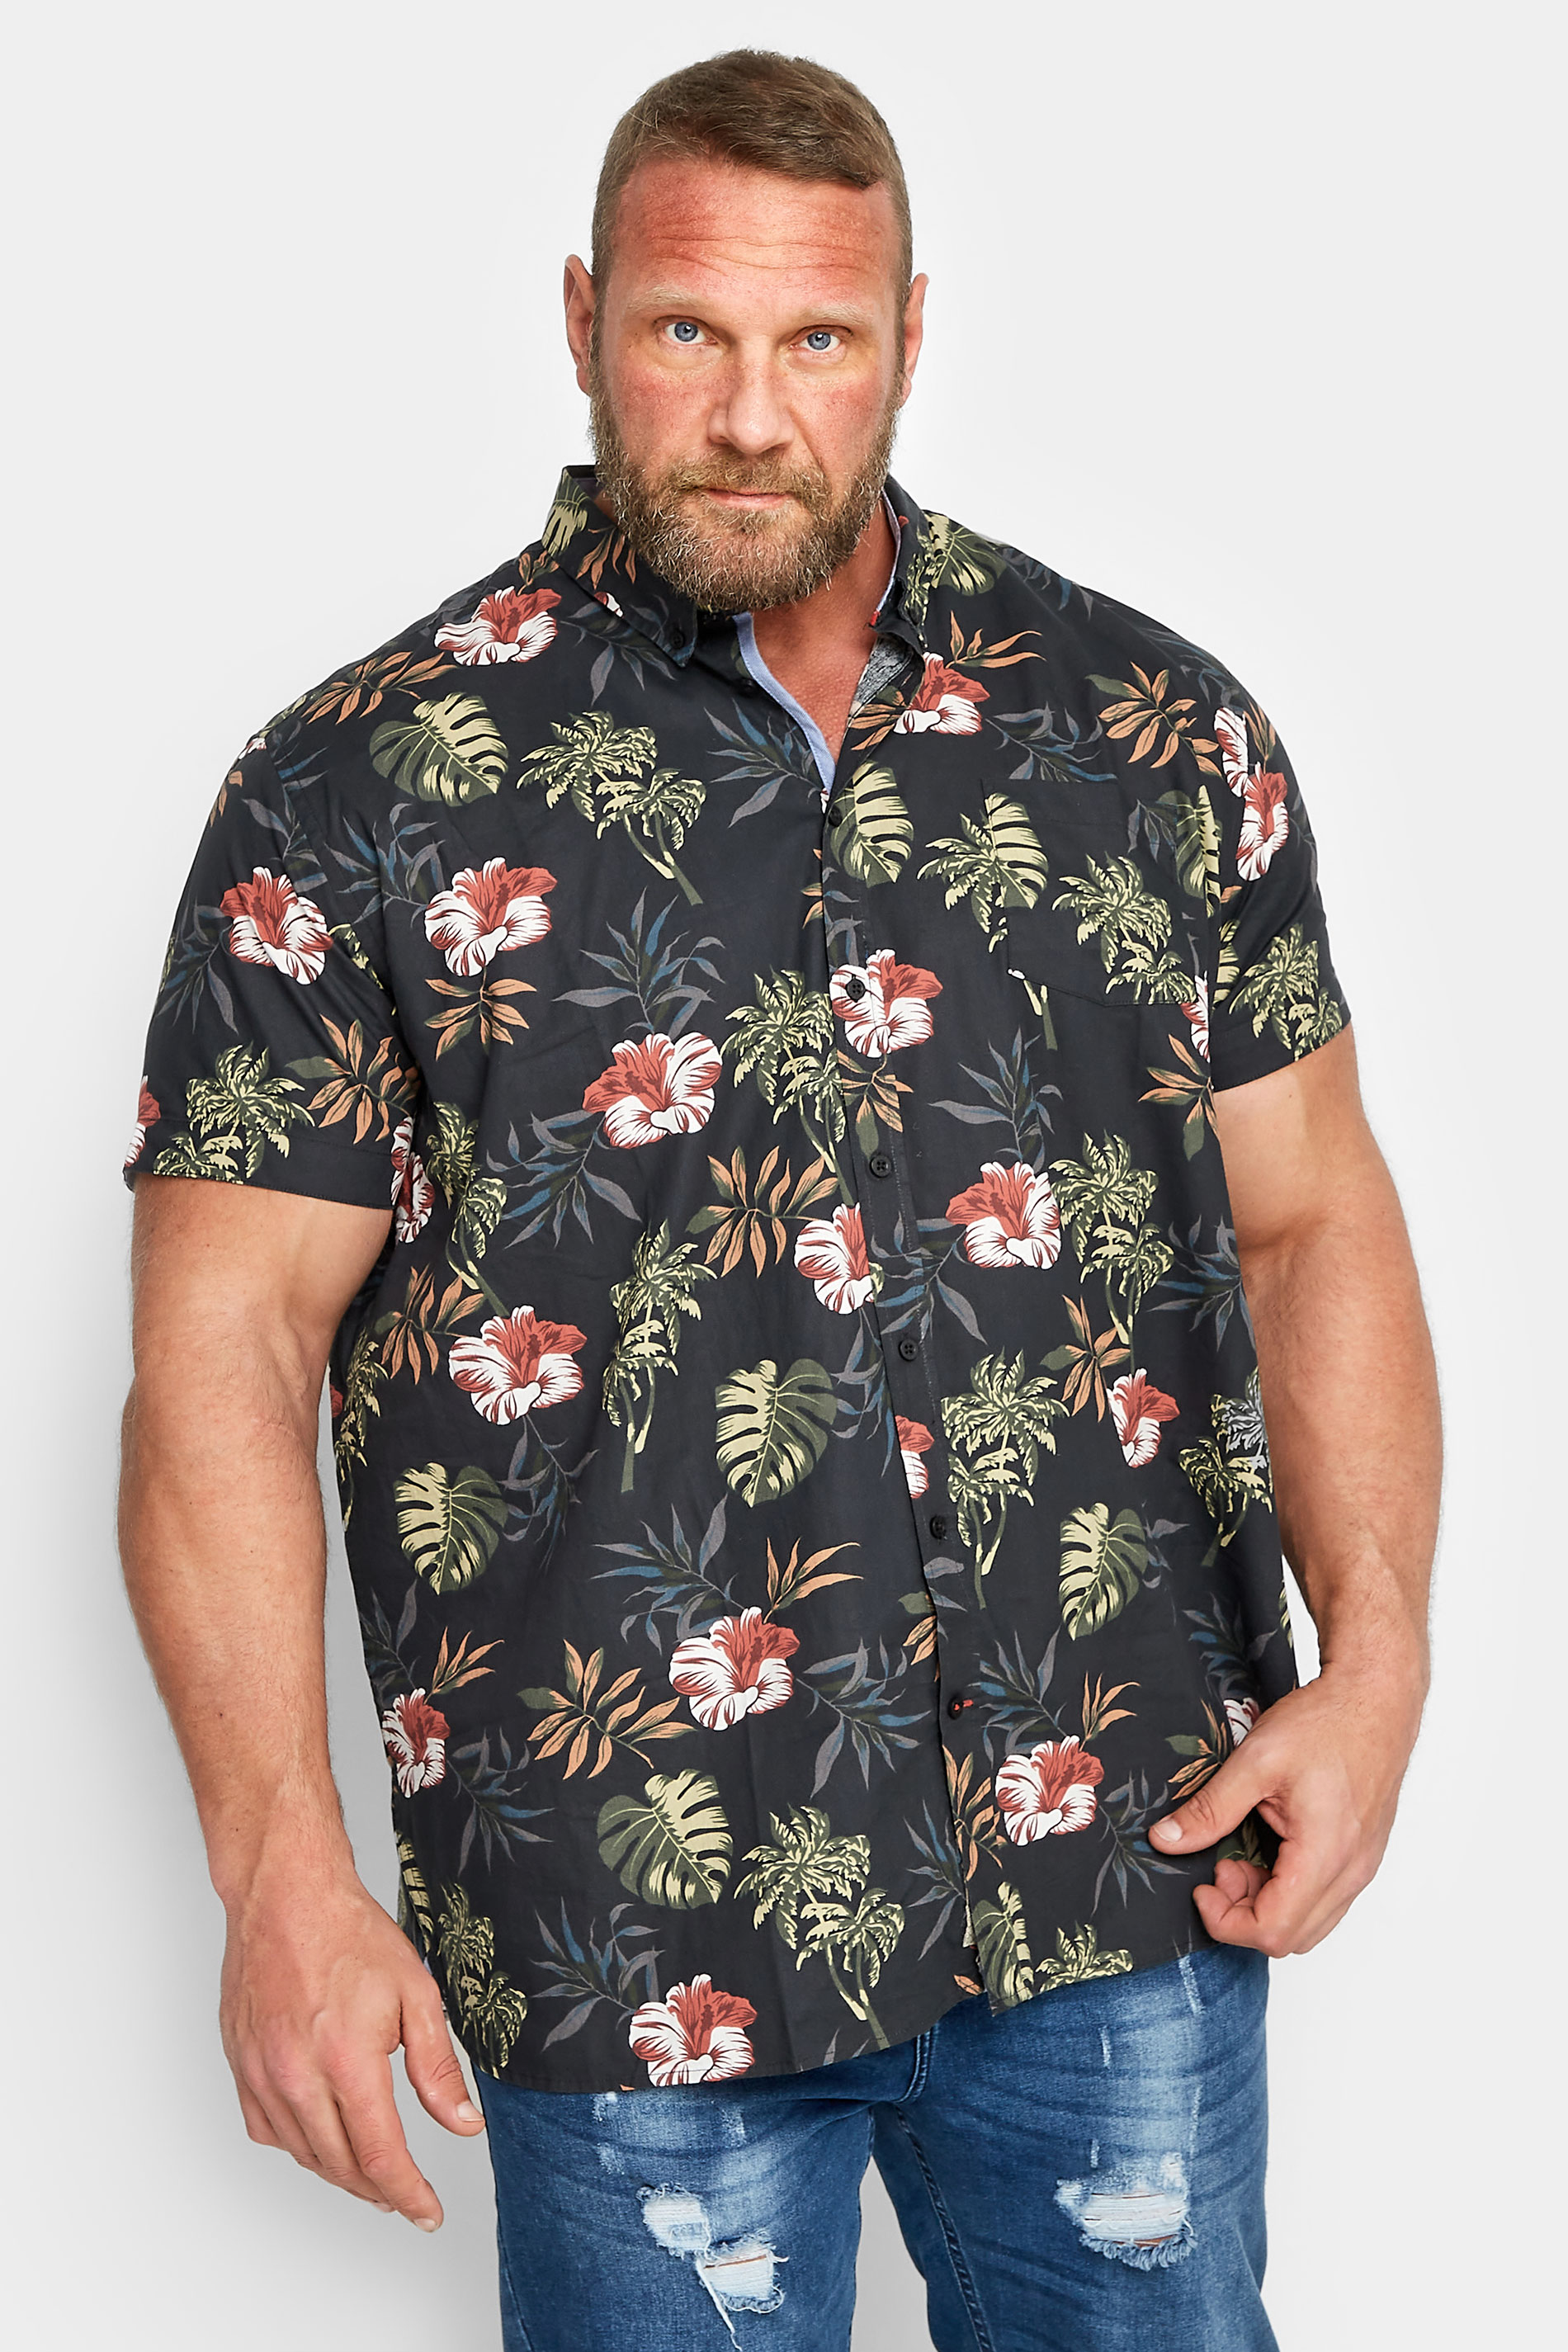 D555 Big & Tall Black Hawaiian Print Shirt | BadRhino 1